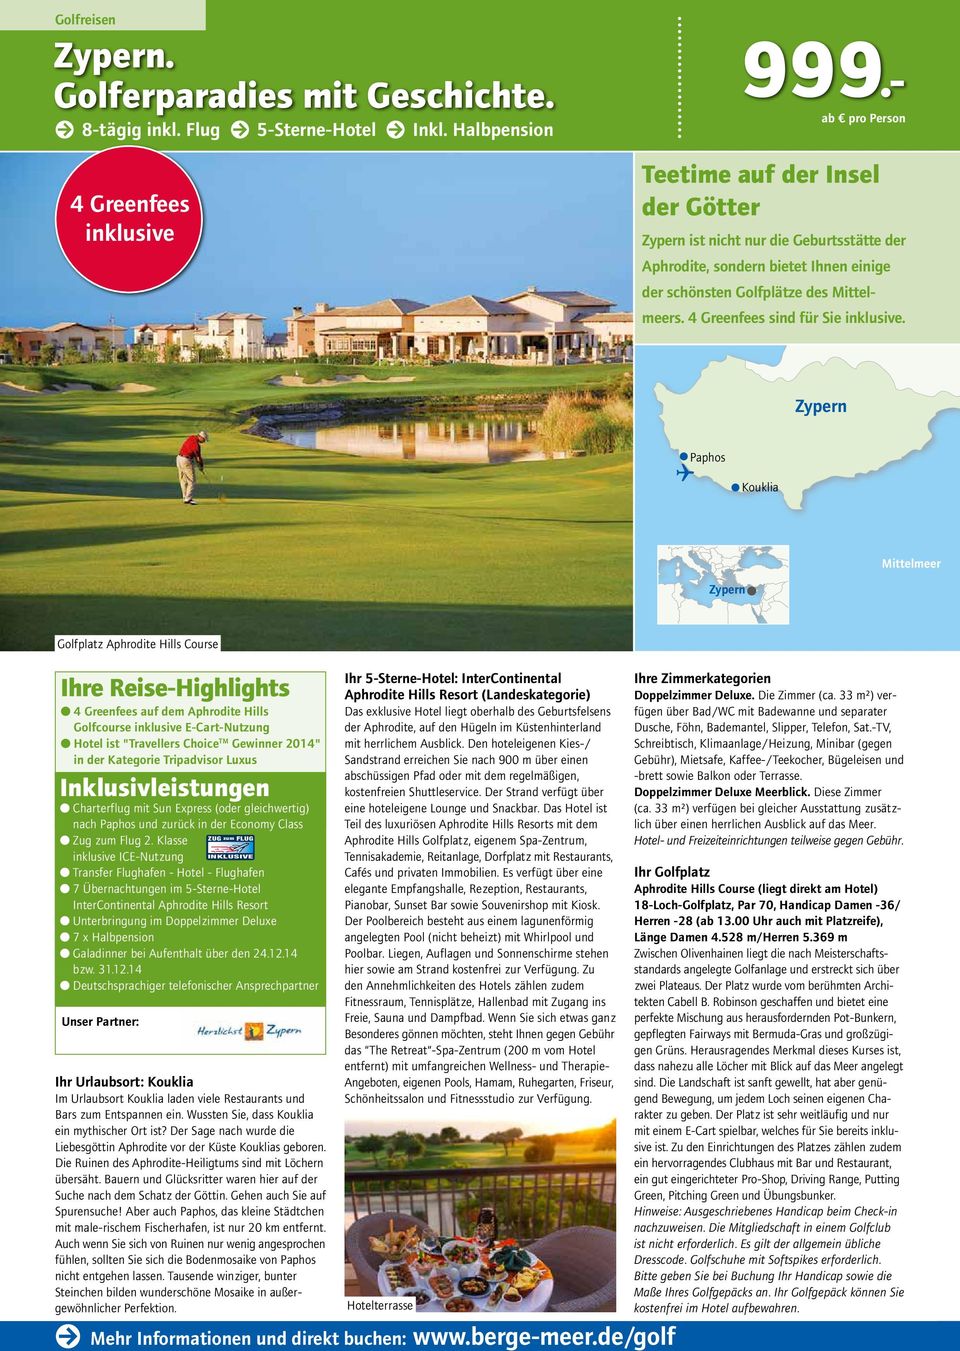 Zypern Paphos Kouklia Mittelmeer Zypern Golfplatz Aphrodite Hills Course 4 Greenfees auf dem Aphrodite Hills Golfcourse E-Cart-Nutzung Hotel ist "Travellers Choice TM Gewinner 2014" in der Kategorie